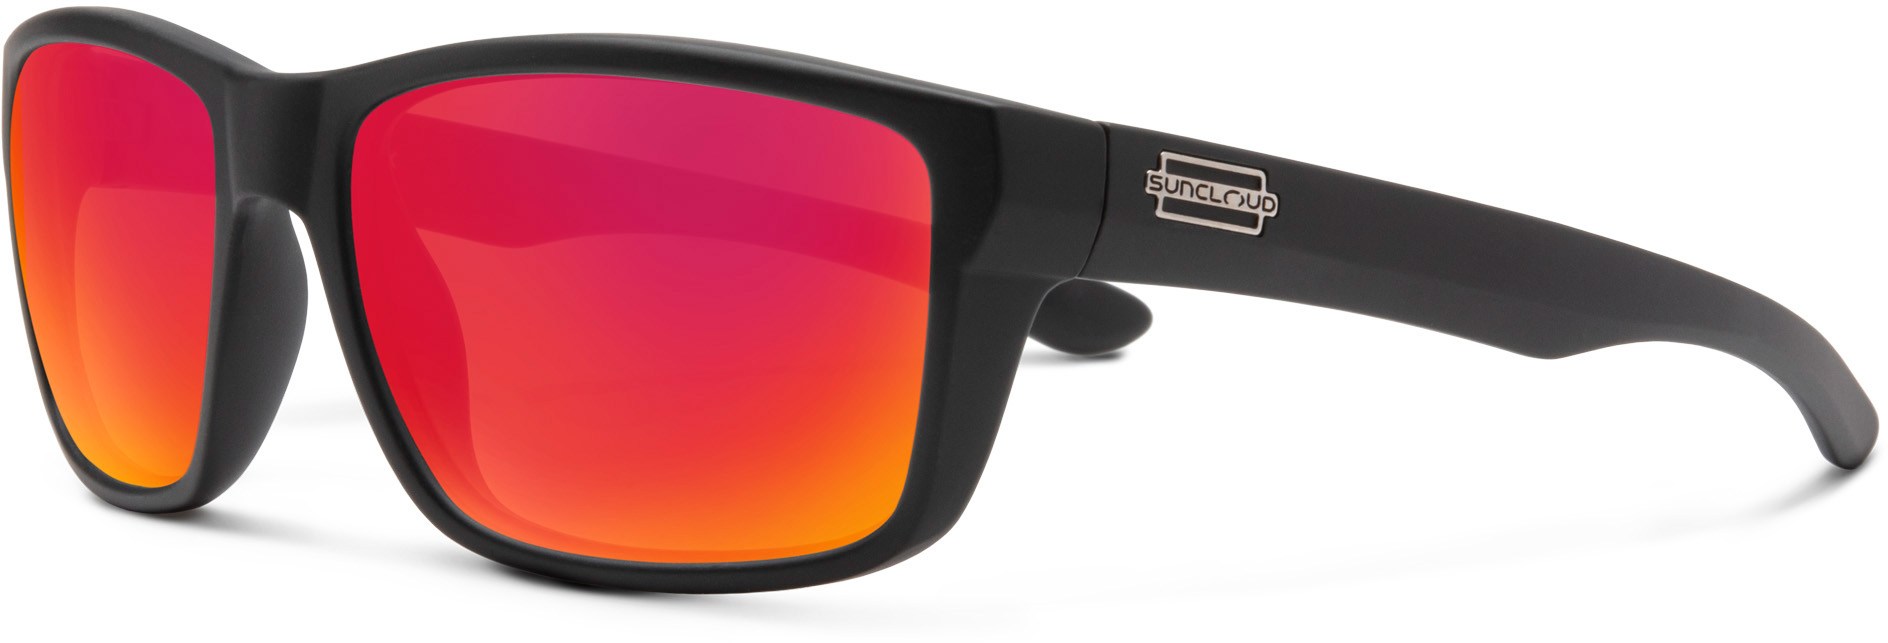 Поляризованные солнцезащитные очки Mayor Suncloud, черный разоблачение поляризованных солнцезащитных очков blenders eyewear цвет future ruler pol